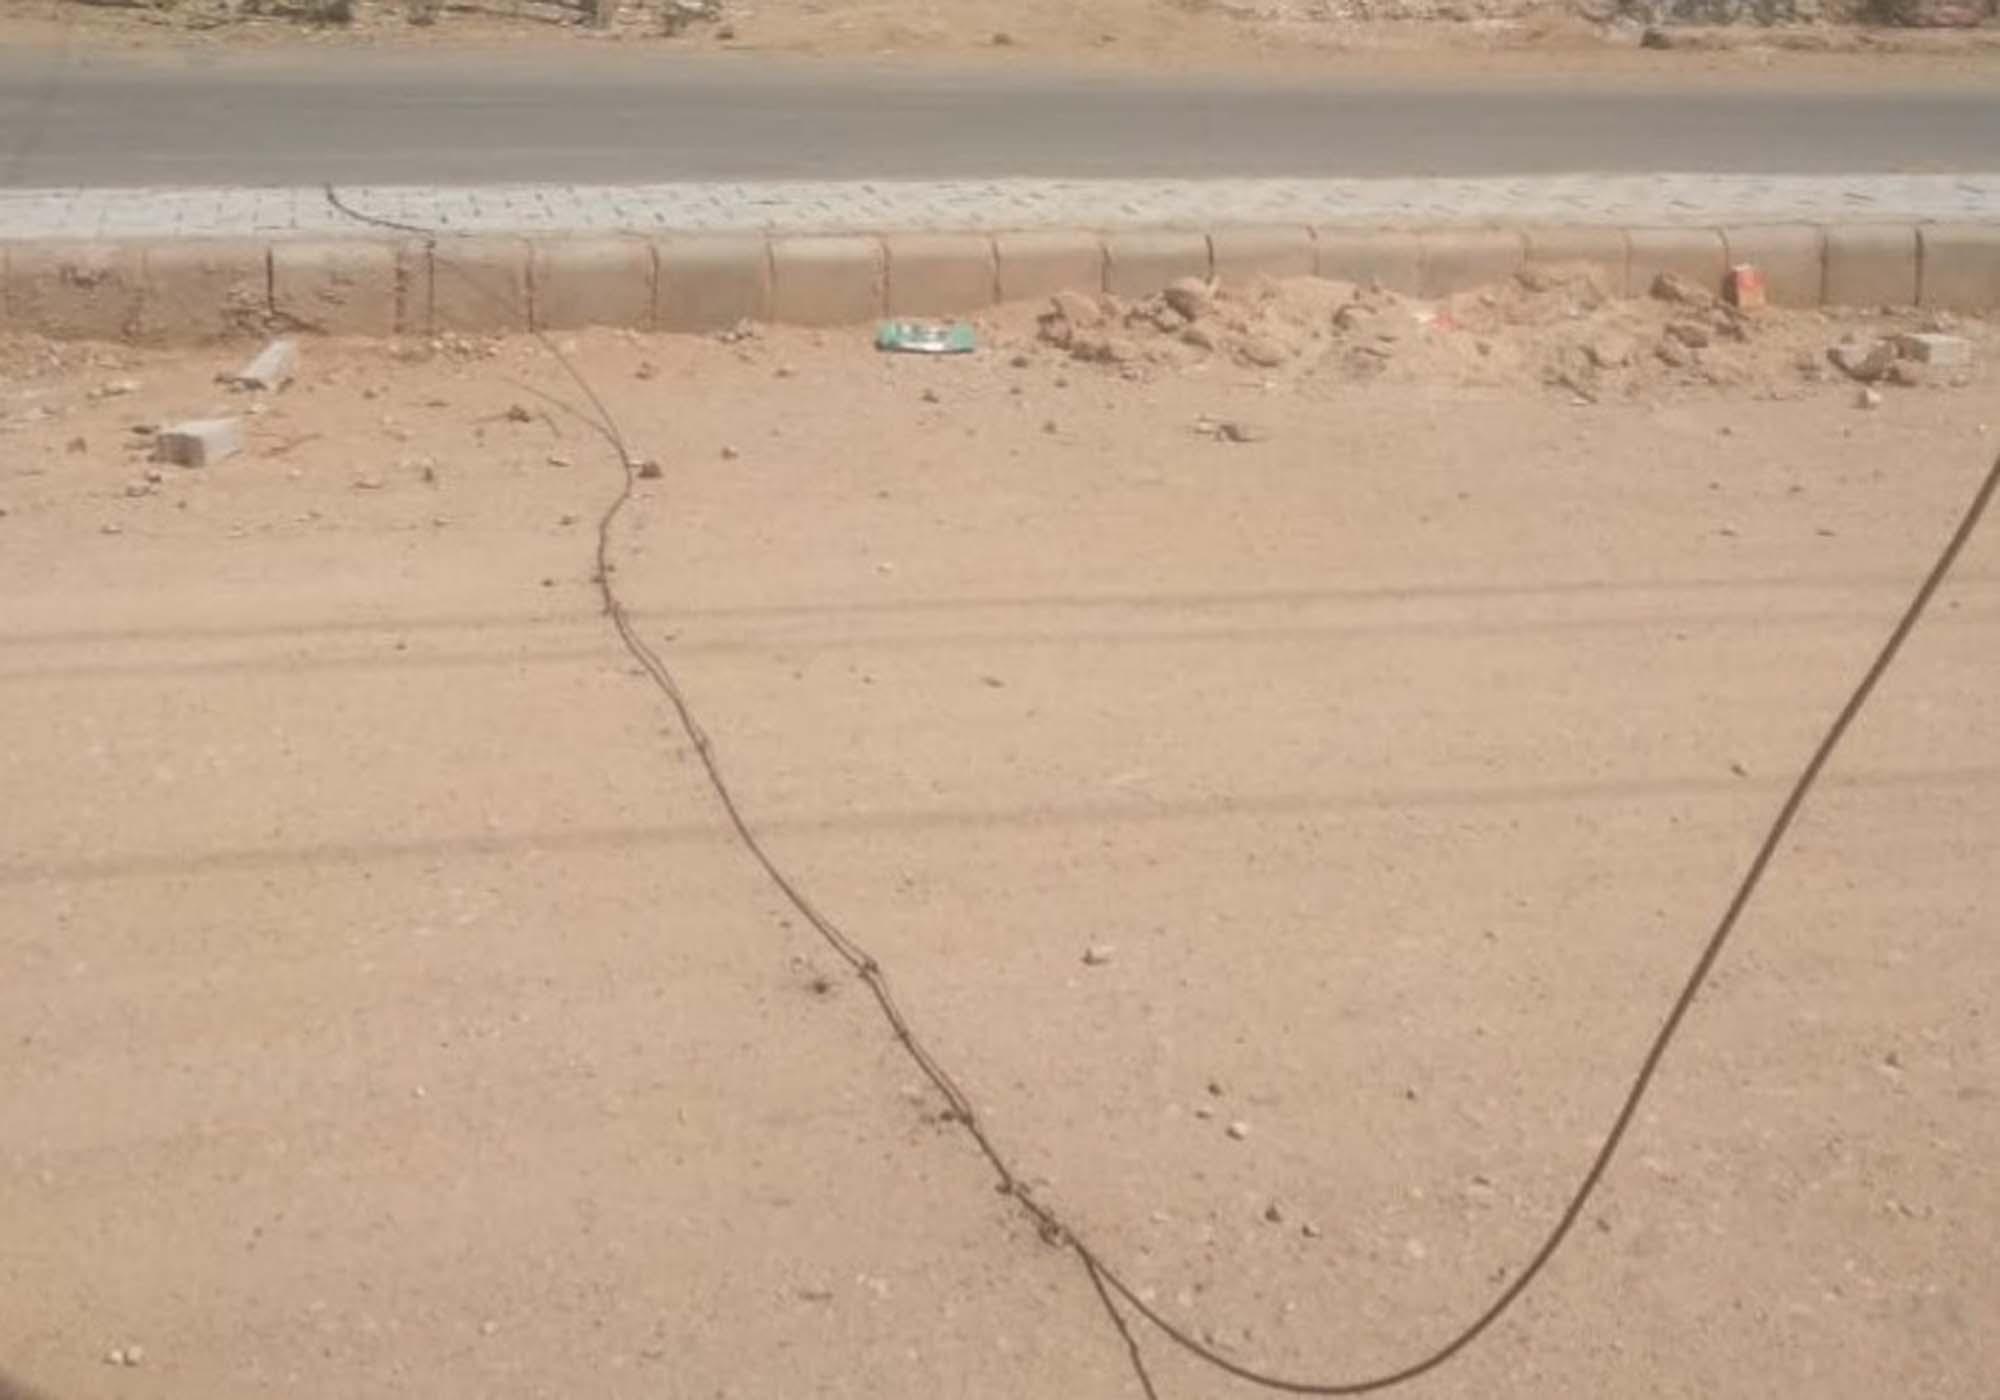 फलोदी के मलार रोड पर धराशायी विद्युत लाइन